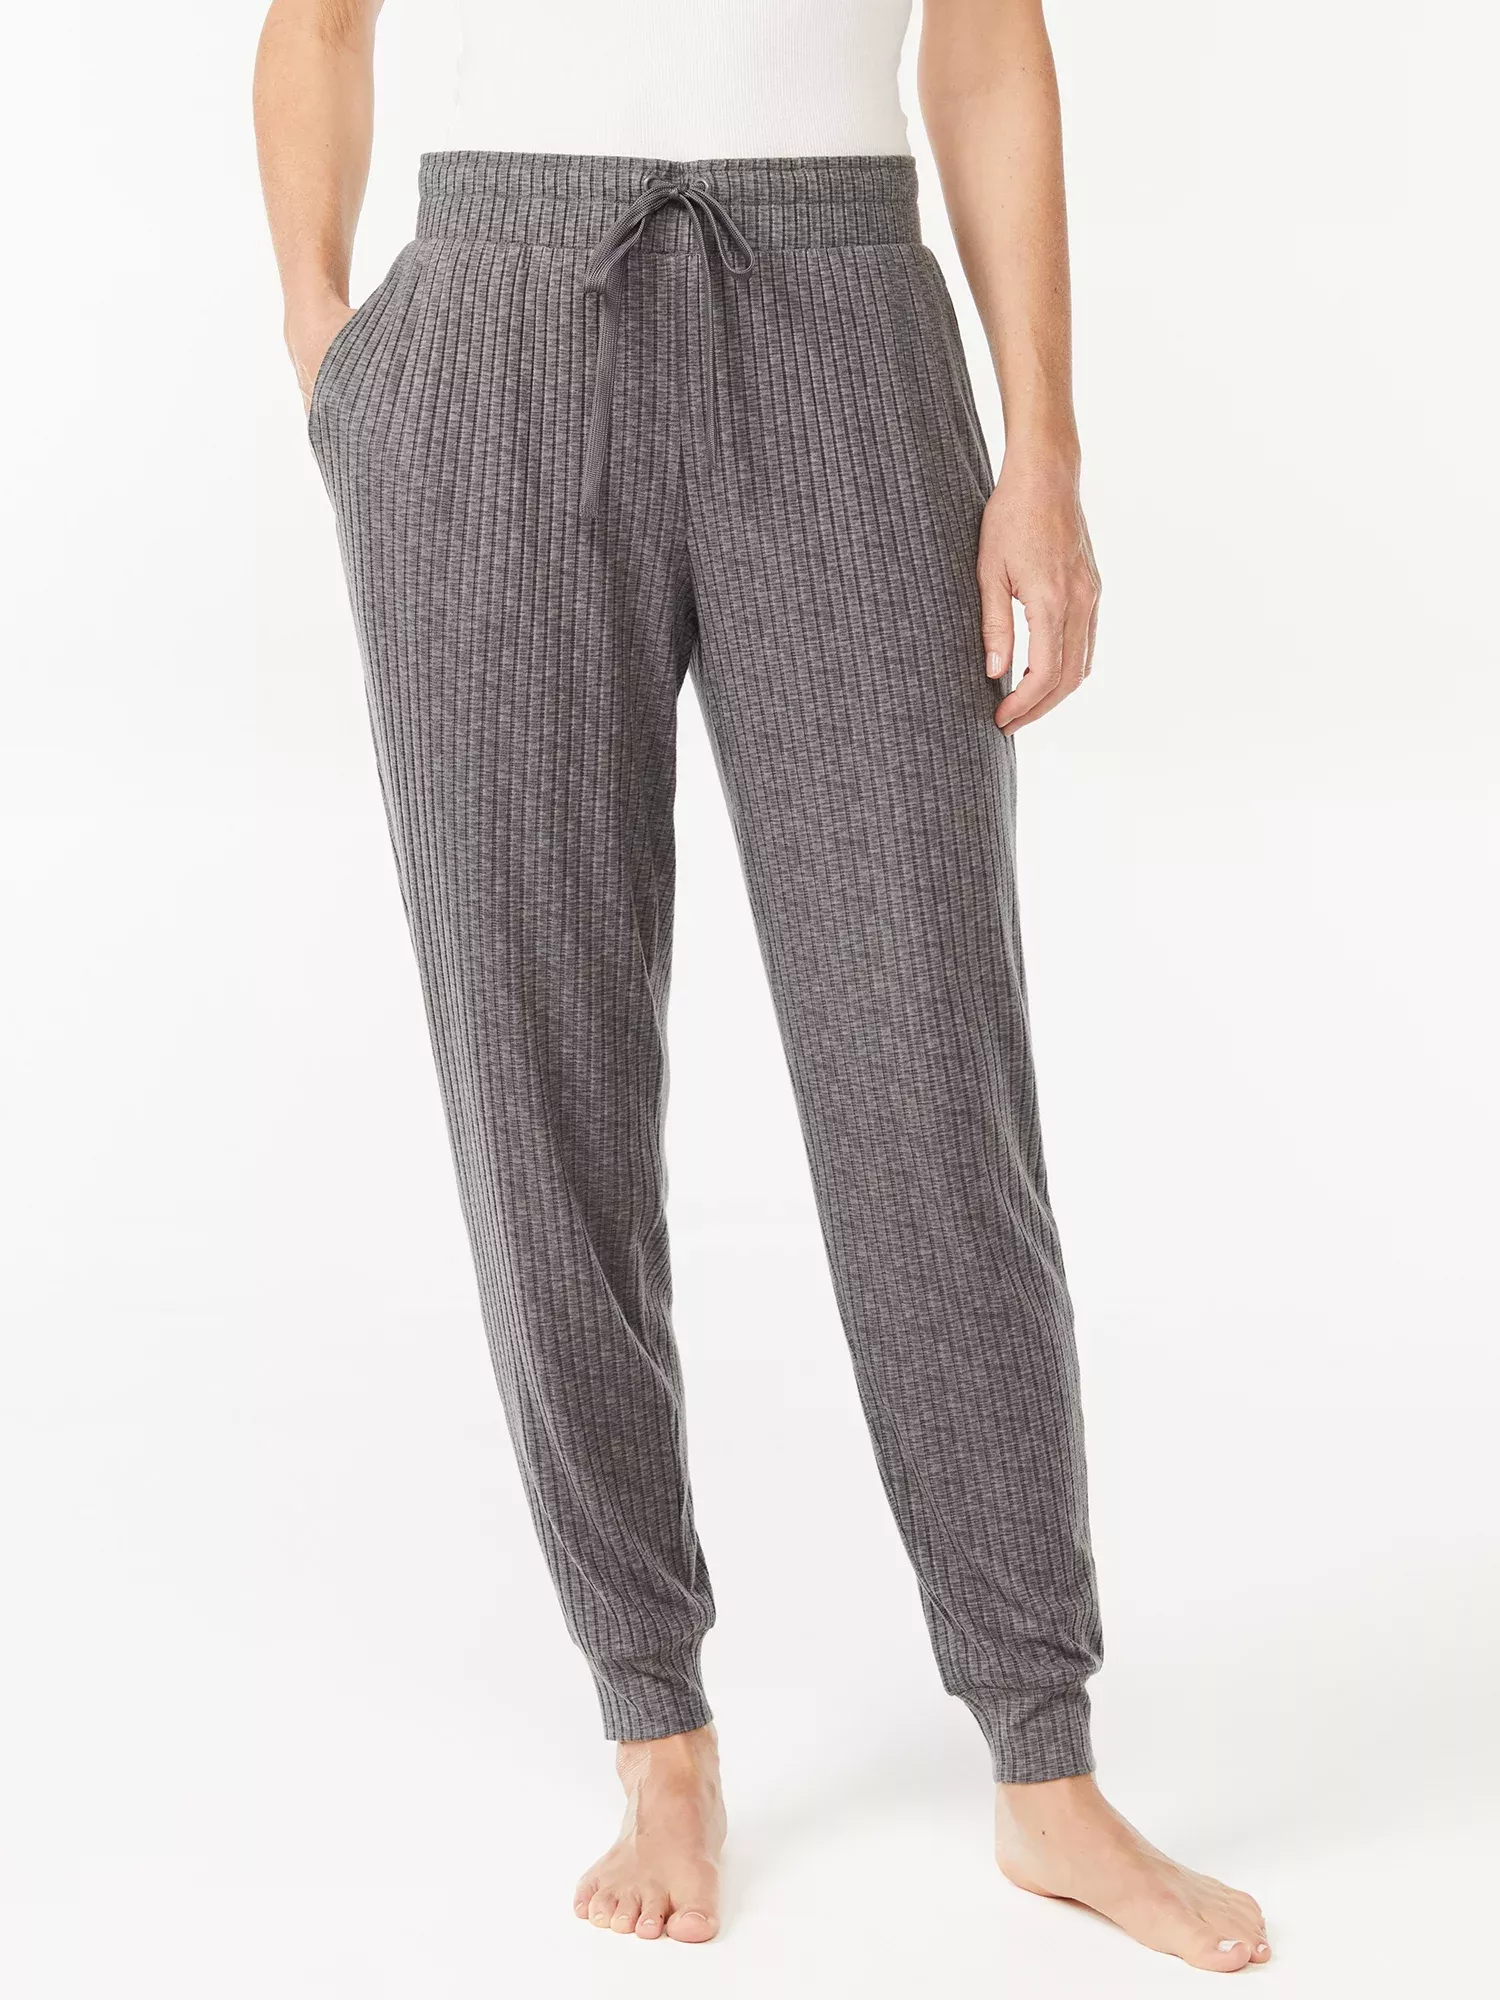 Joyspun Women's Hacci Knit Wide Leg Pajama Pants, Sizes S to 3X